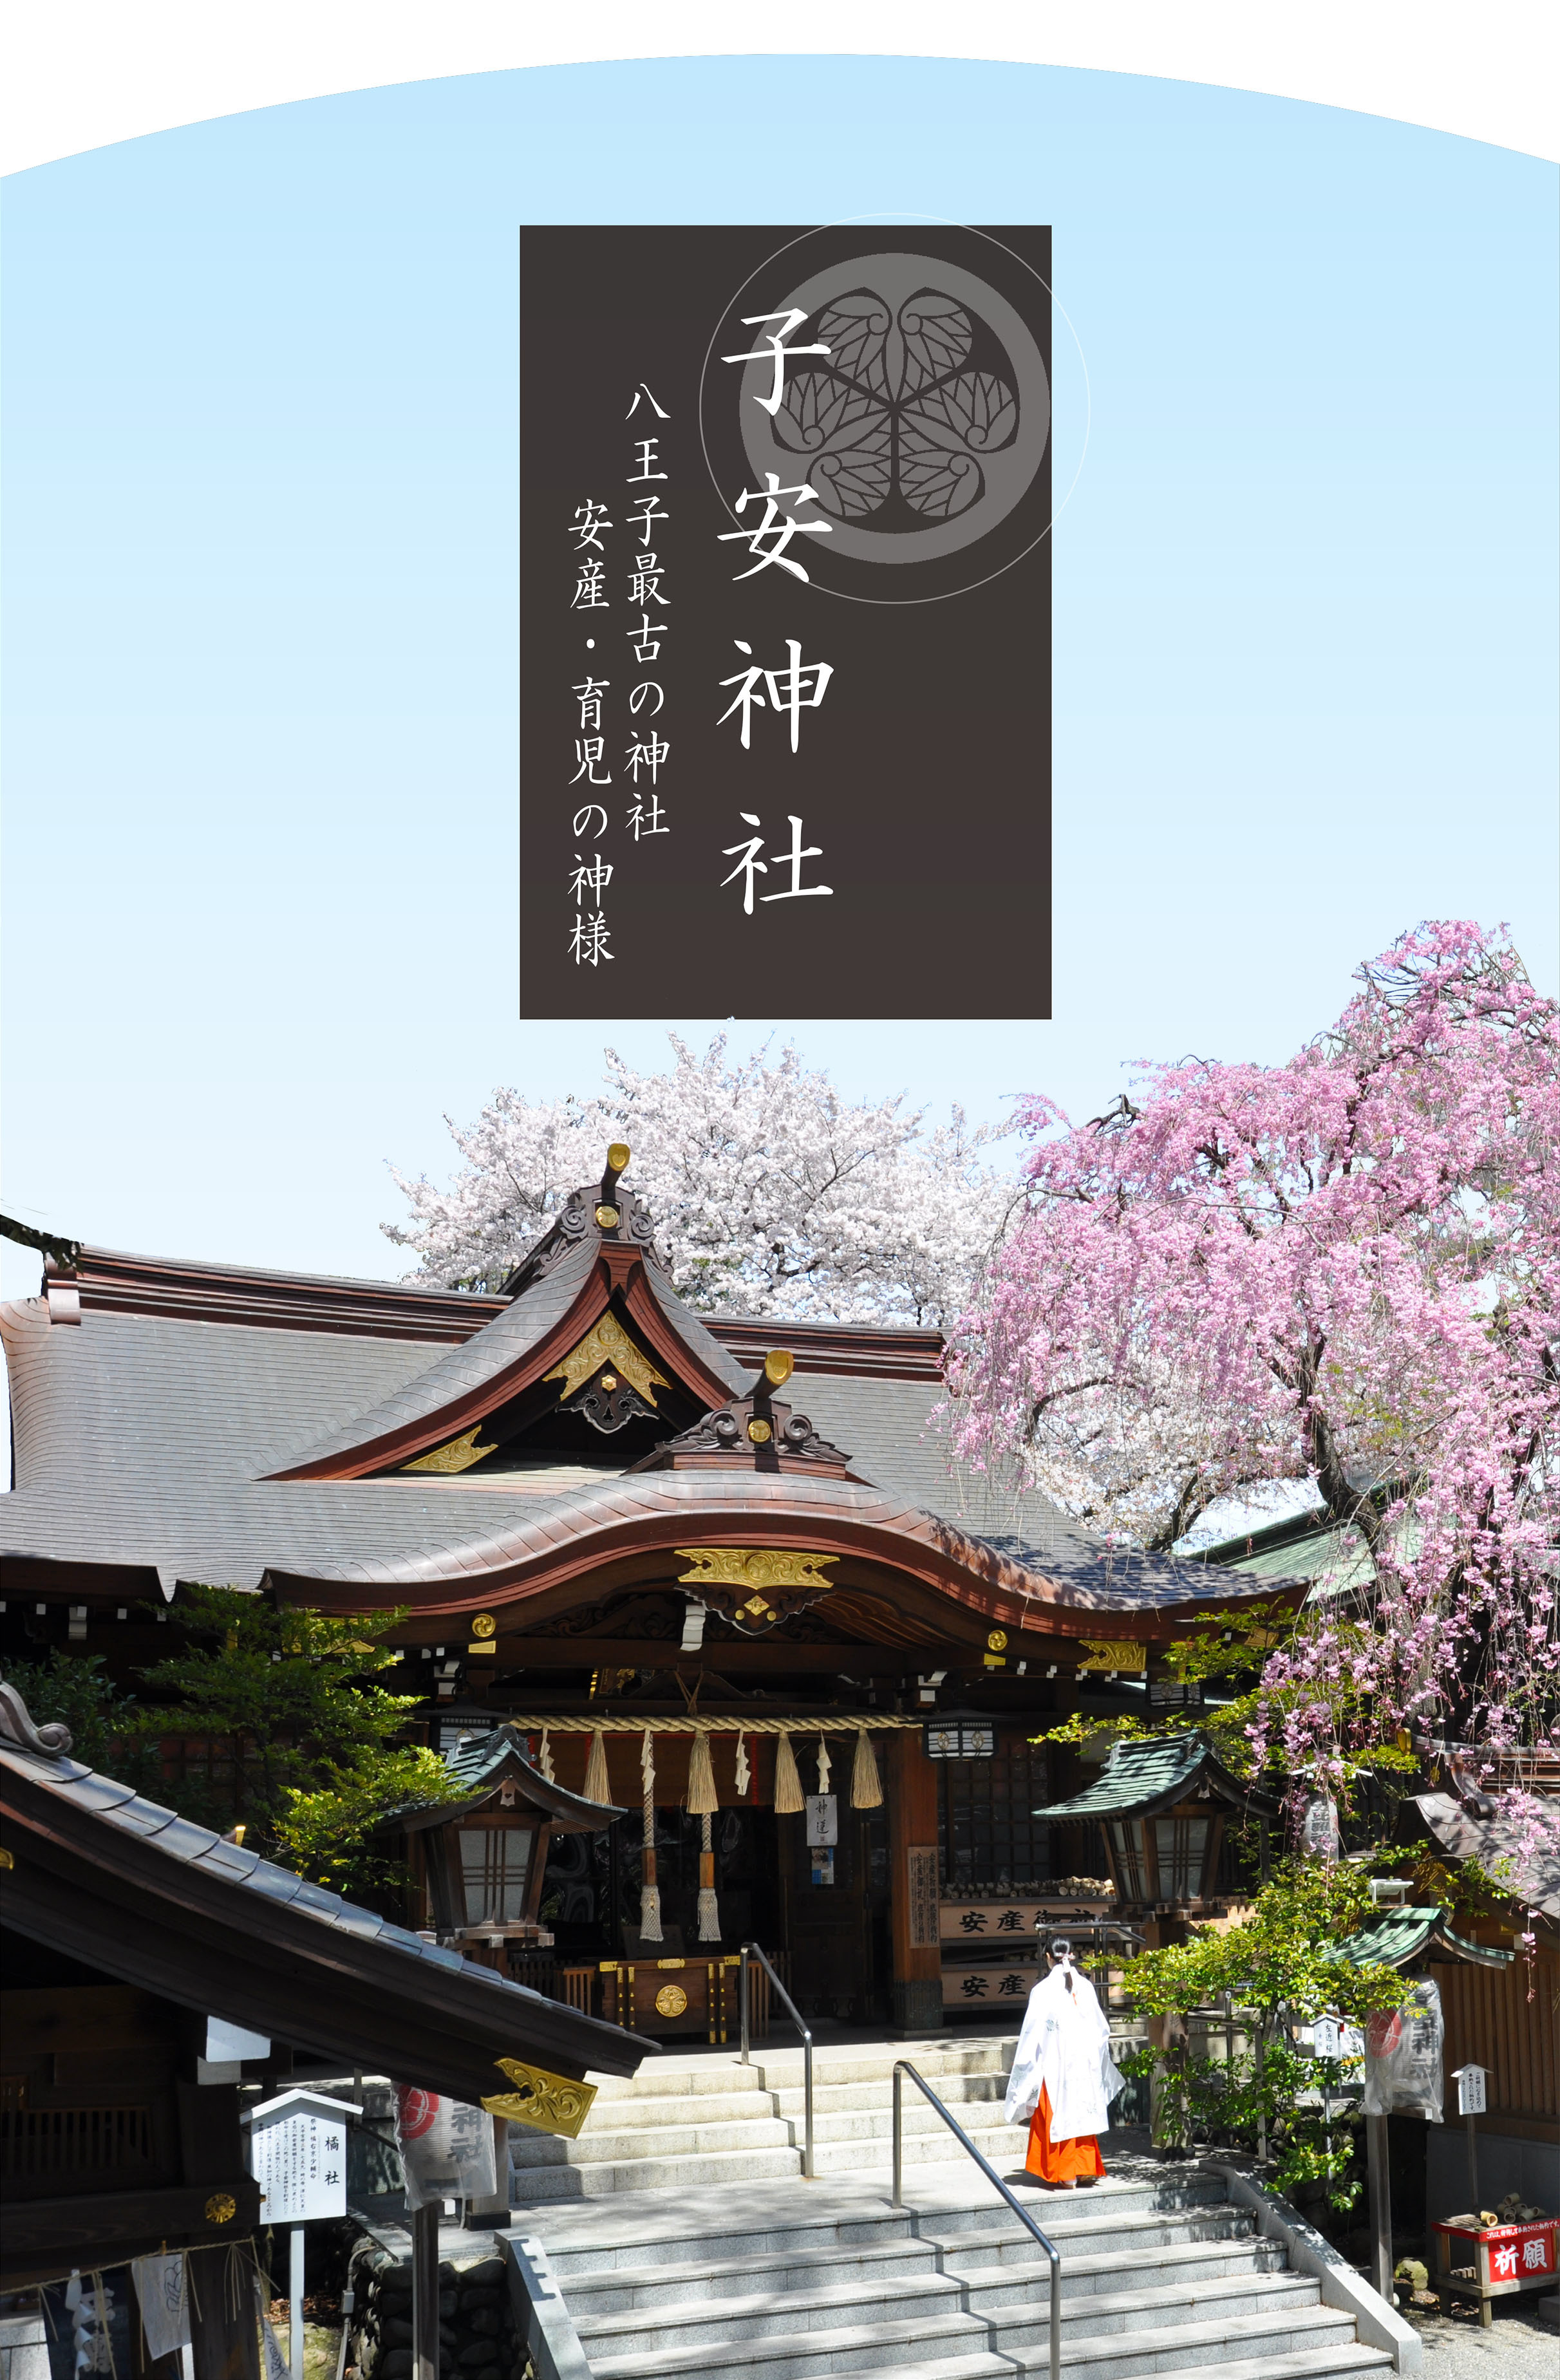 子安神社 公式サイト 子安神社 公式サイト